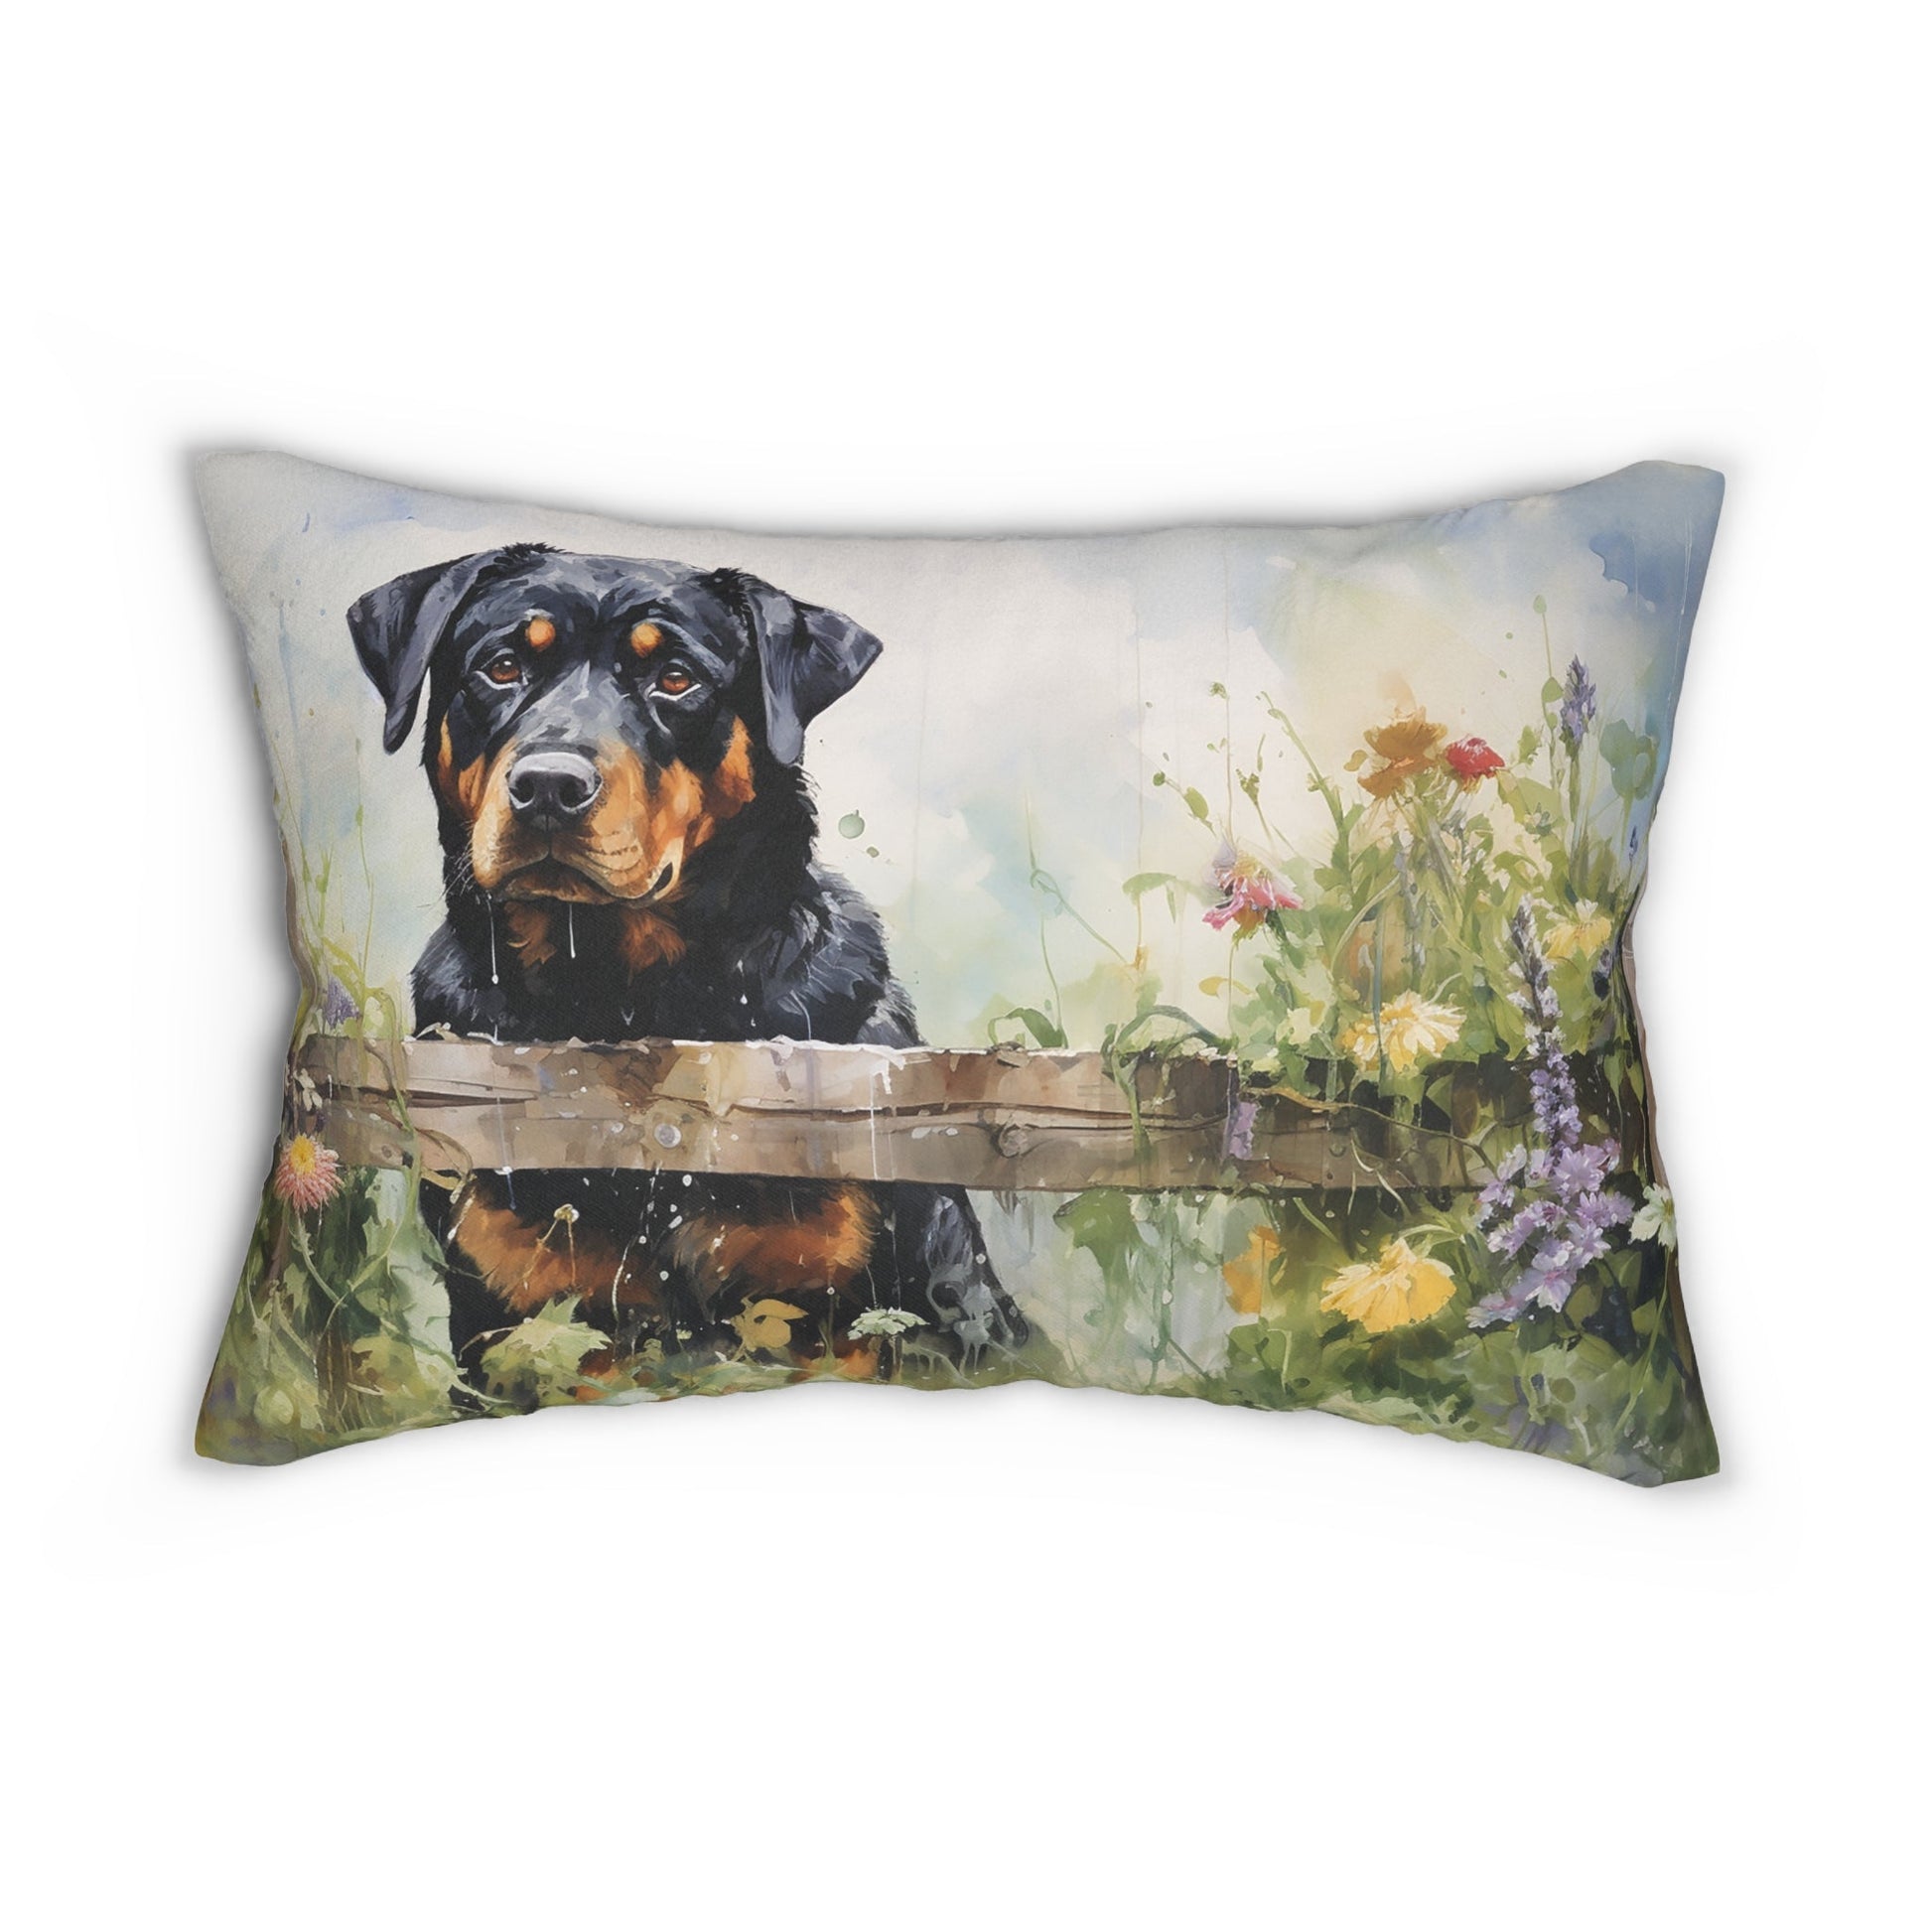 Rottweiler Dog Throw Pillow, Lumbar Pillow, Lovely Rottweiler in Garden Home, Lumbar Support Unique Home Accent Pillow, Elegant Any Room - FlooredByArt